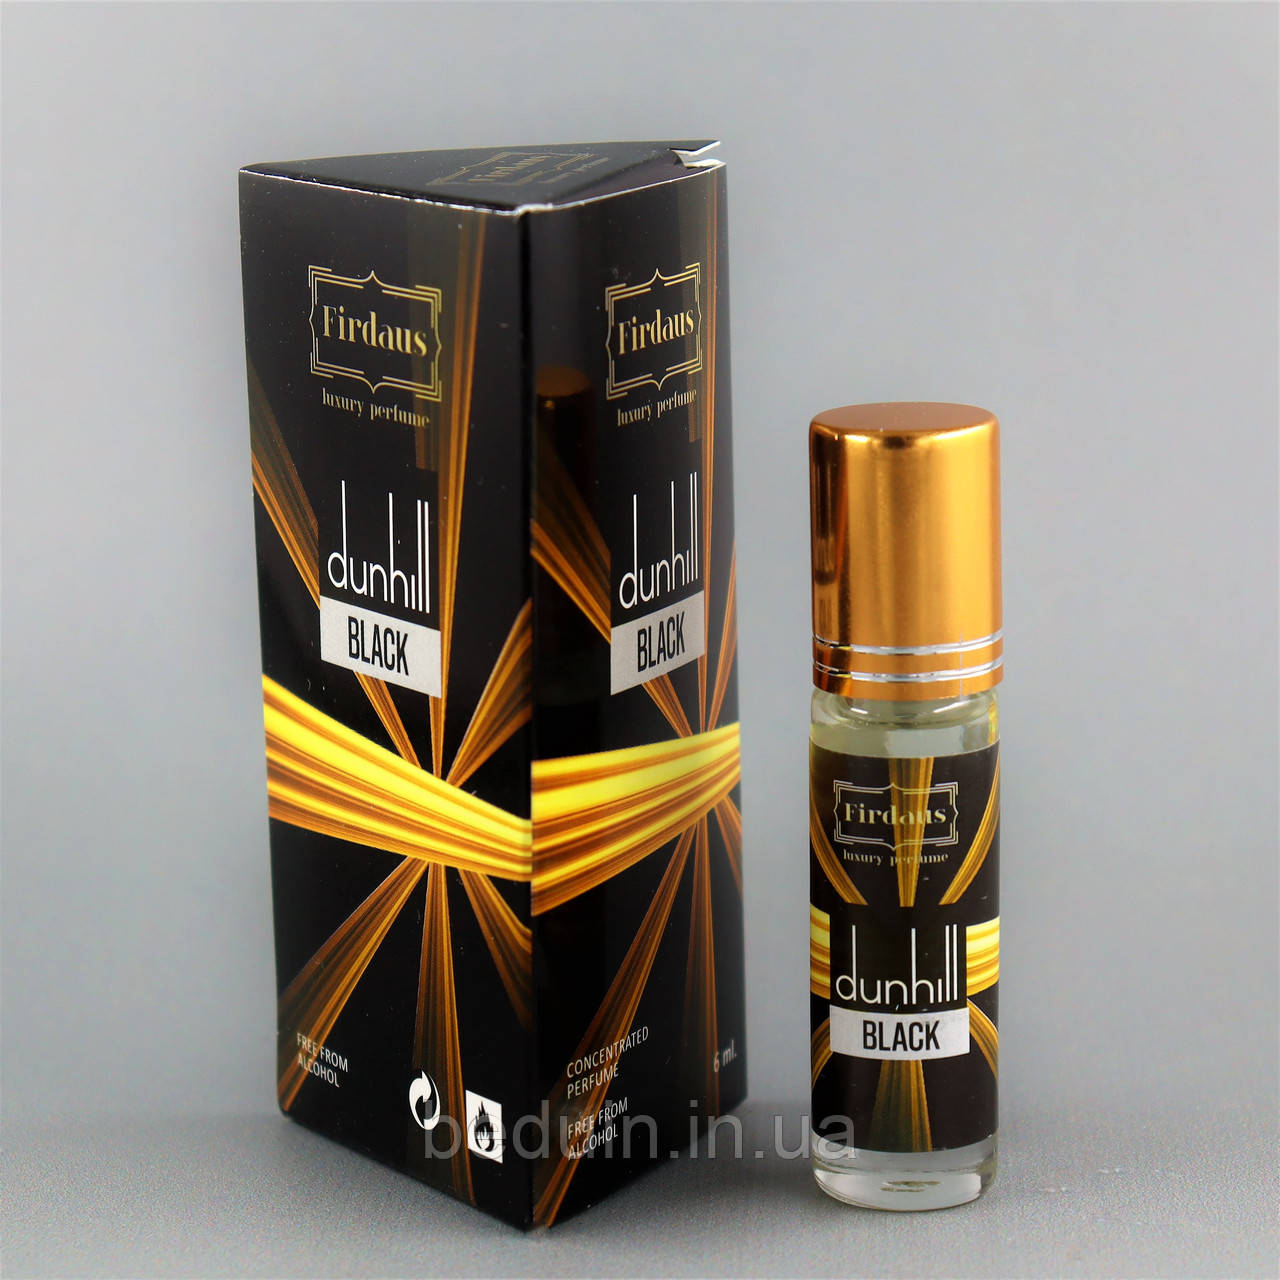 Арабські олійні парфуми Dunhill Black (Данхіл Блек) — від Firdaus